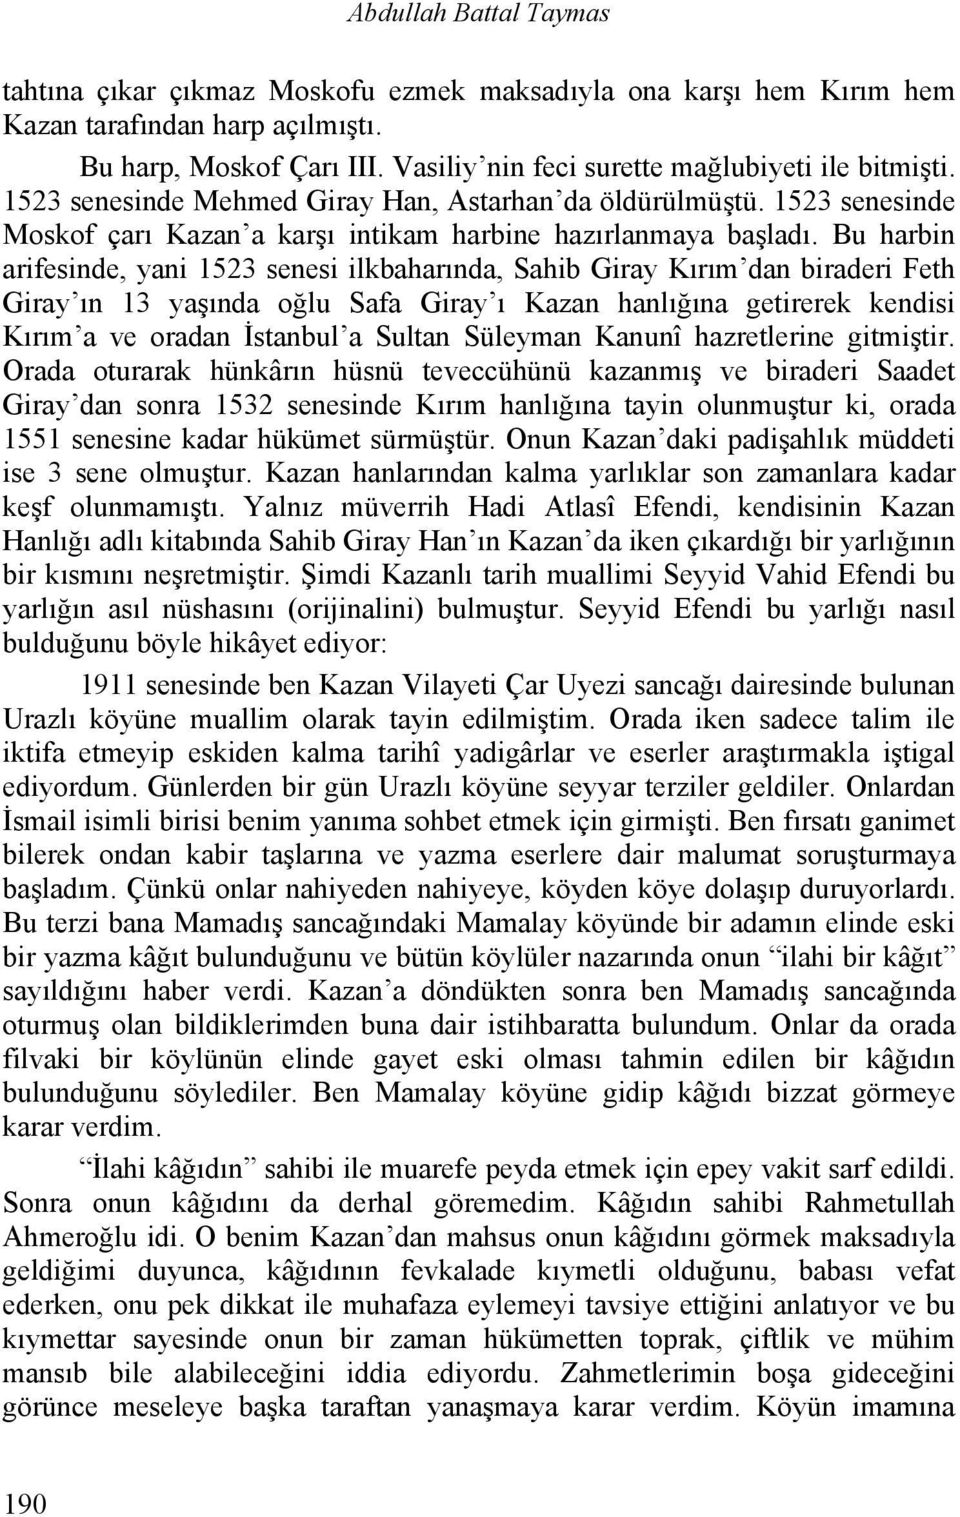 Bu harbin arifesinde, yani 1523 senesi ilkbaharında, Sahib Giray Kırım dan biraderi Feth Giray ın 13 yaşında oğlu Safa Giray ı Kazan hanlığına getirerek kendisi Kırım a ve oradan İstanbul a Sultan